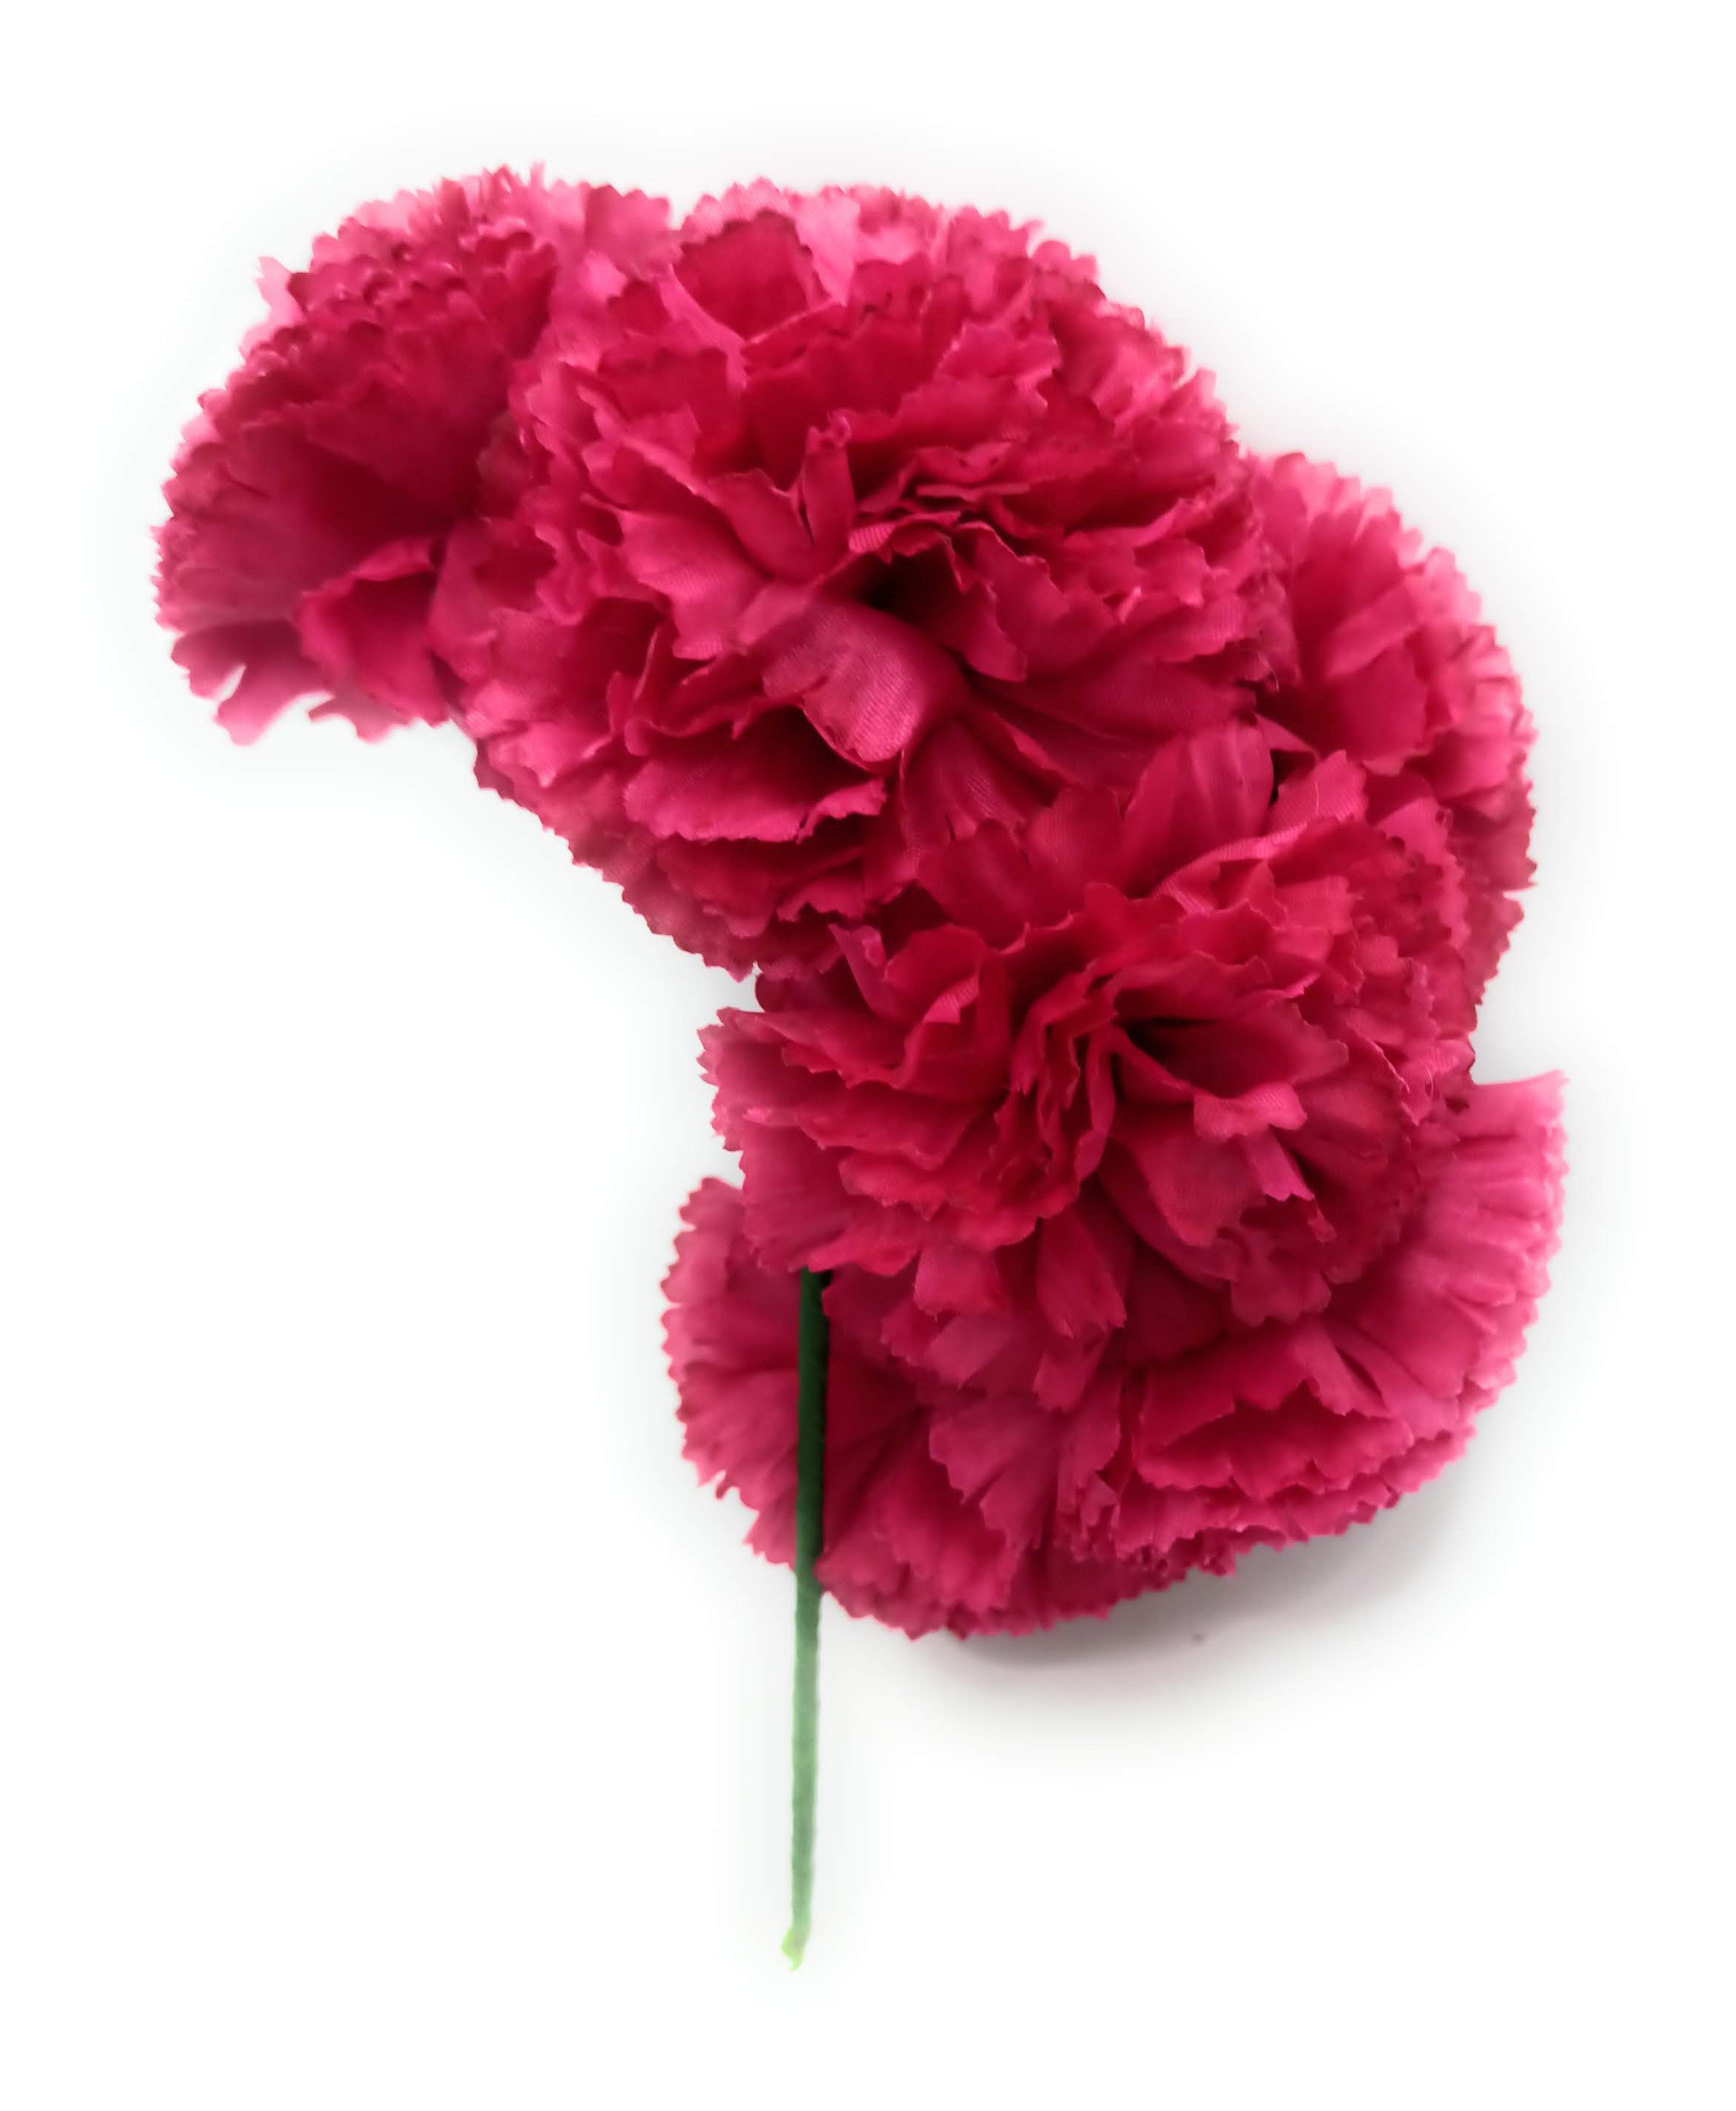 Complementos Flamenca - Corona de flores en tonos buganvilla